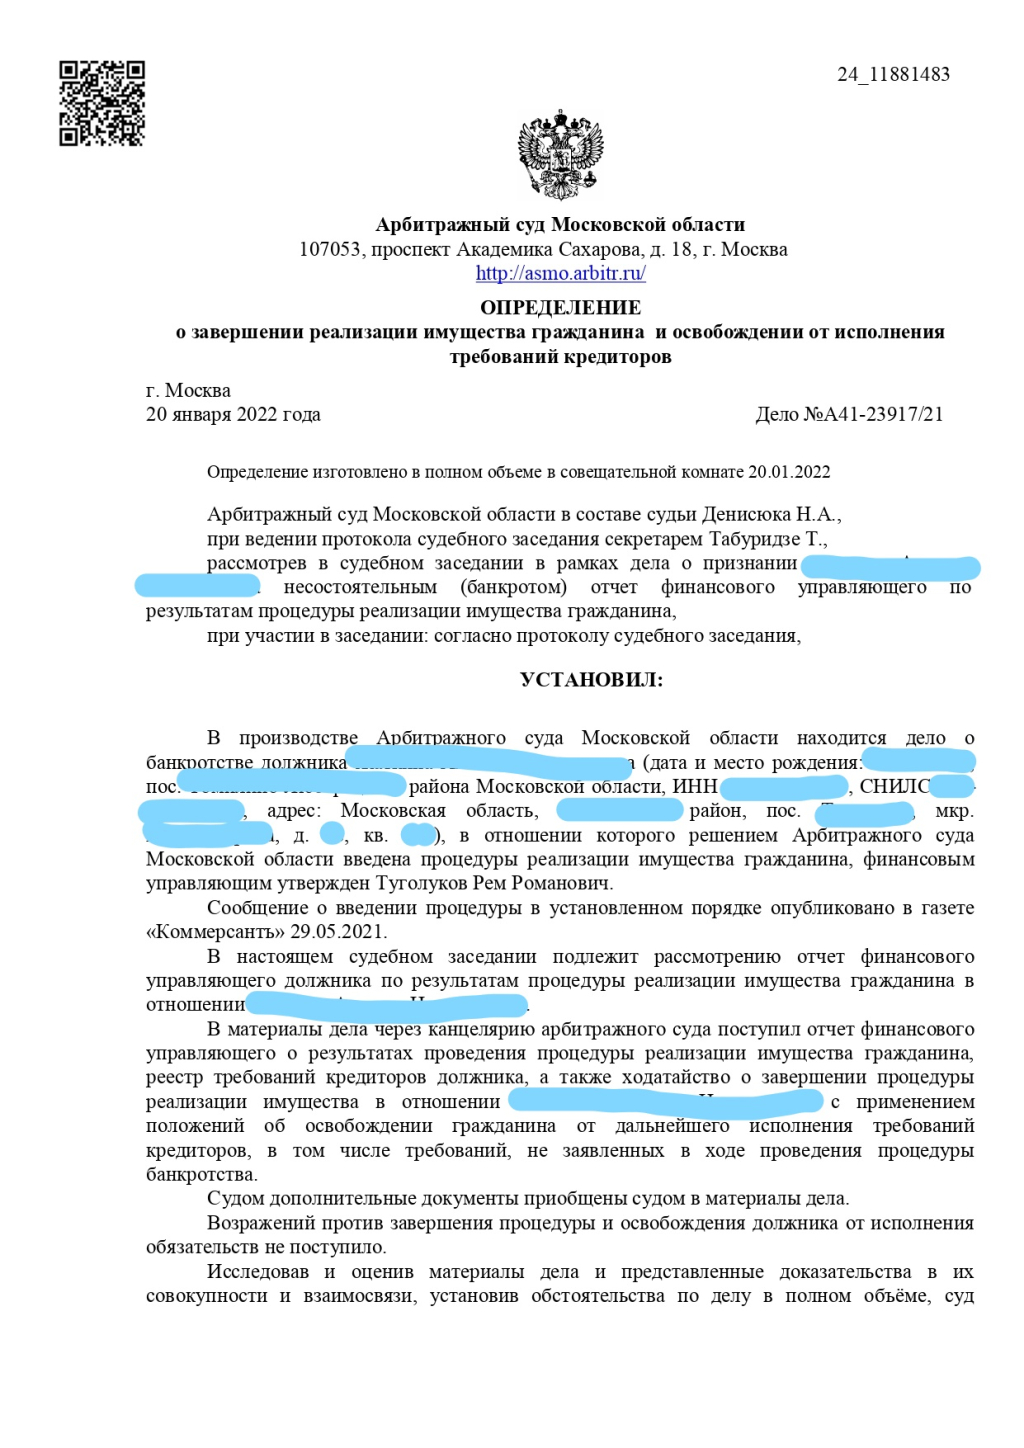 Федеральный Центр Банкротства Граждан - Банкротился с ФЦБГ и Ремом Романовичем Туголуковым